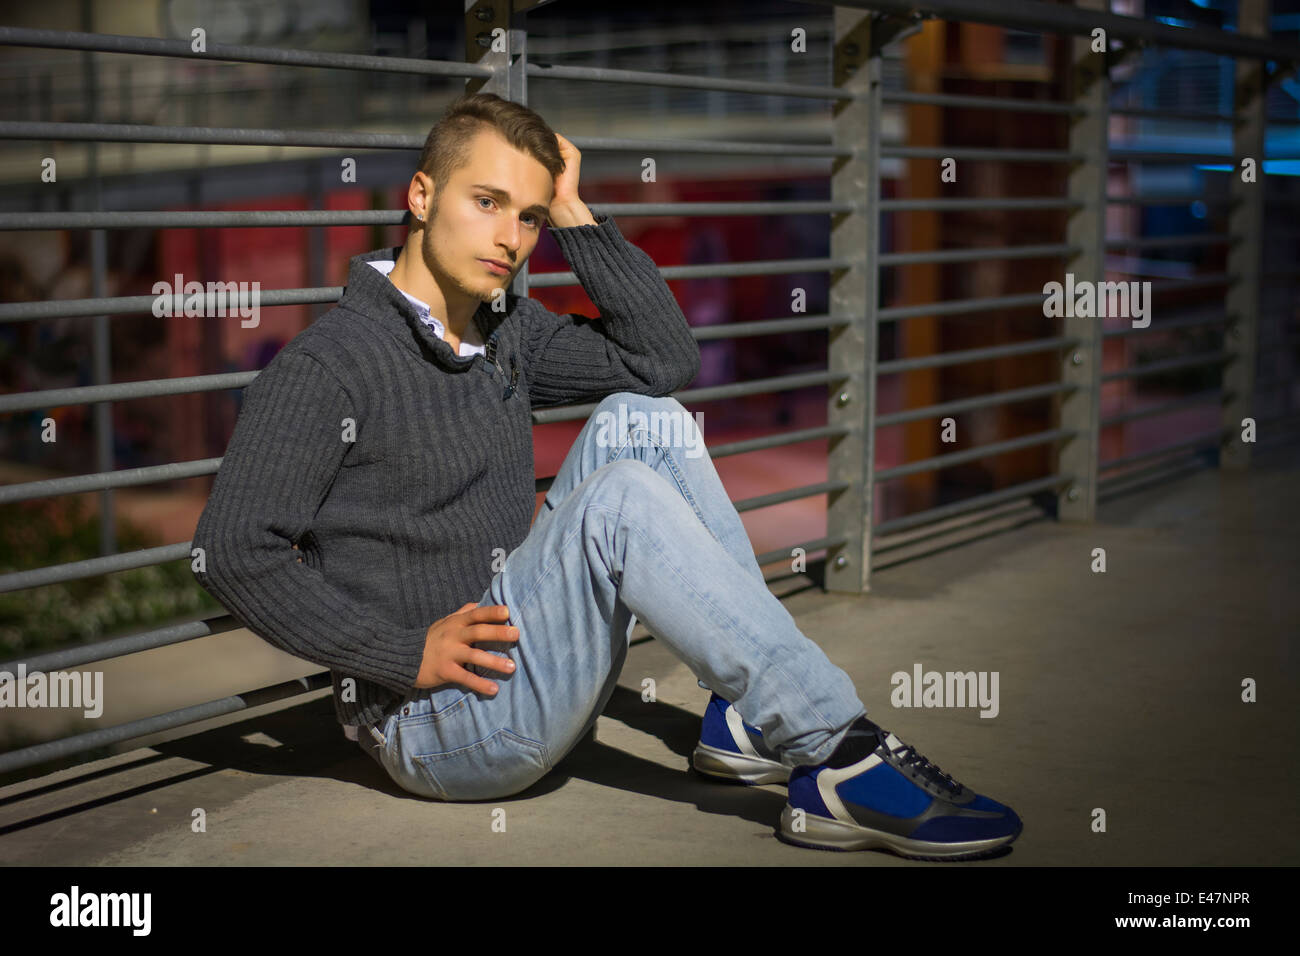 Hübscher blonder junger Mann sitzt allein in städtischen Umfeld, Blick in die Kamera, Nachtaufnahme Stockfoto